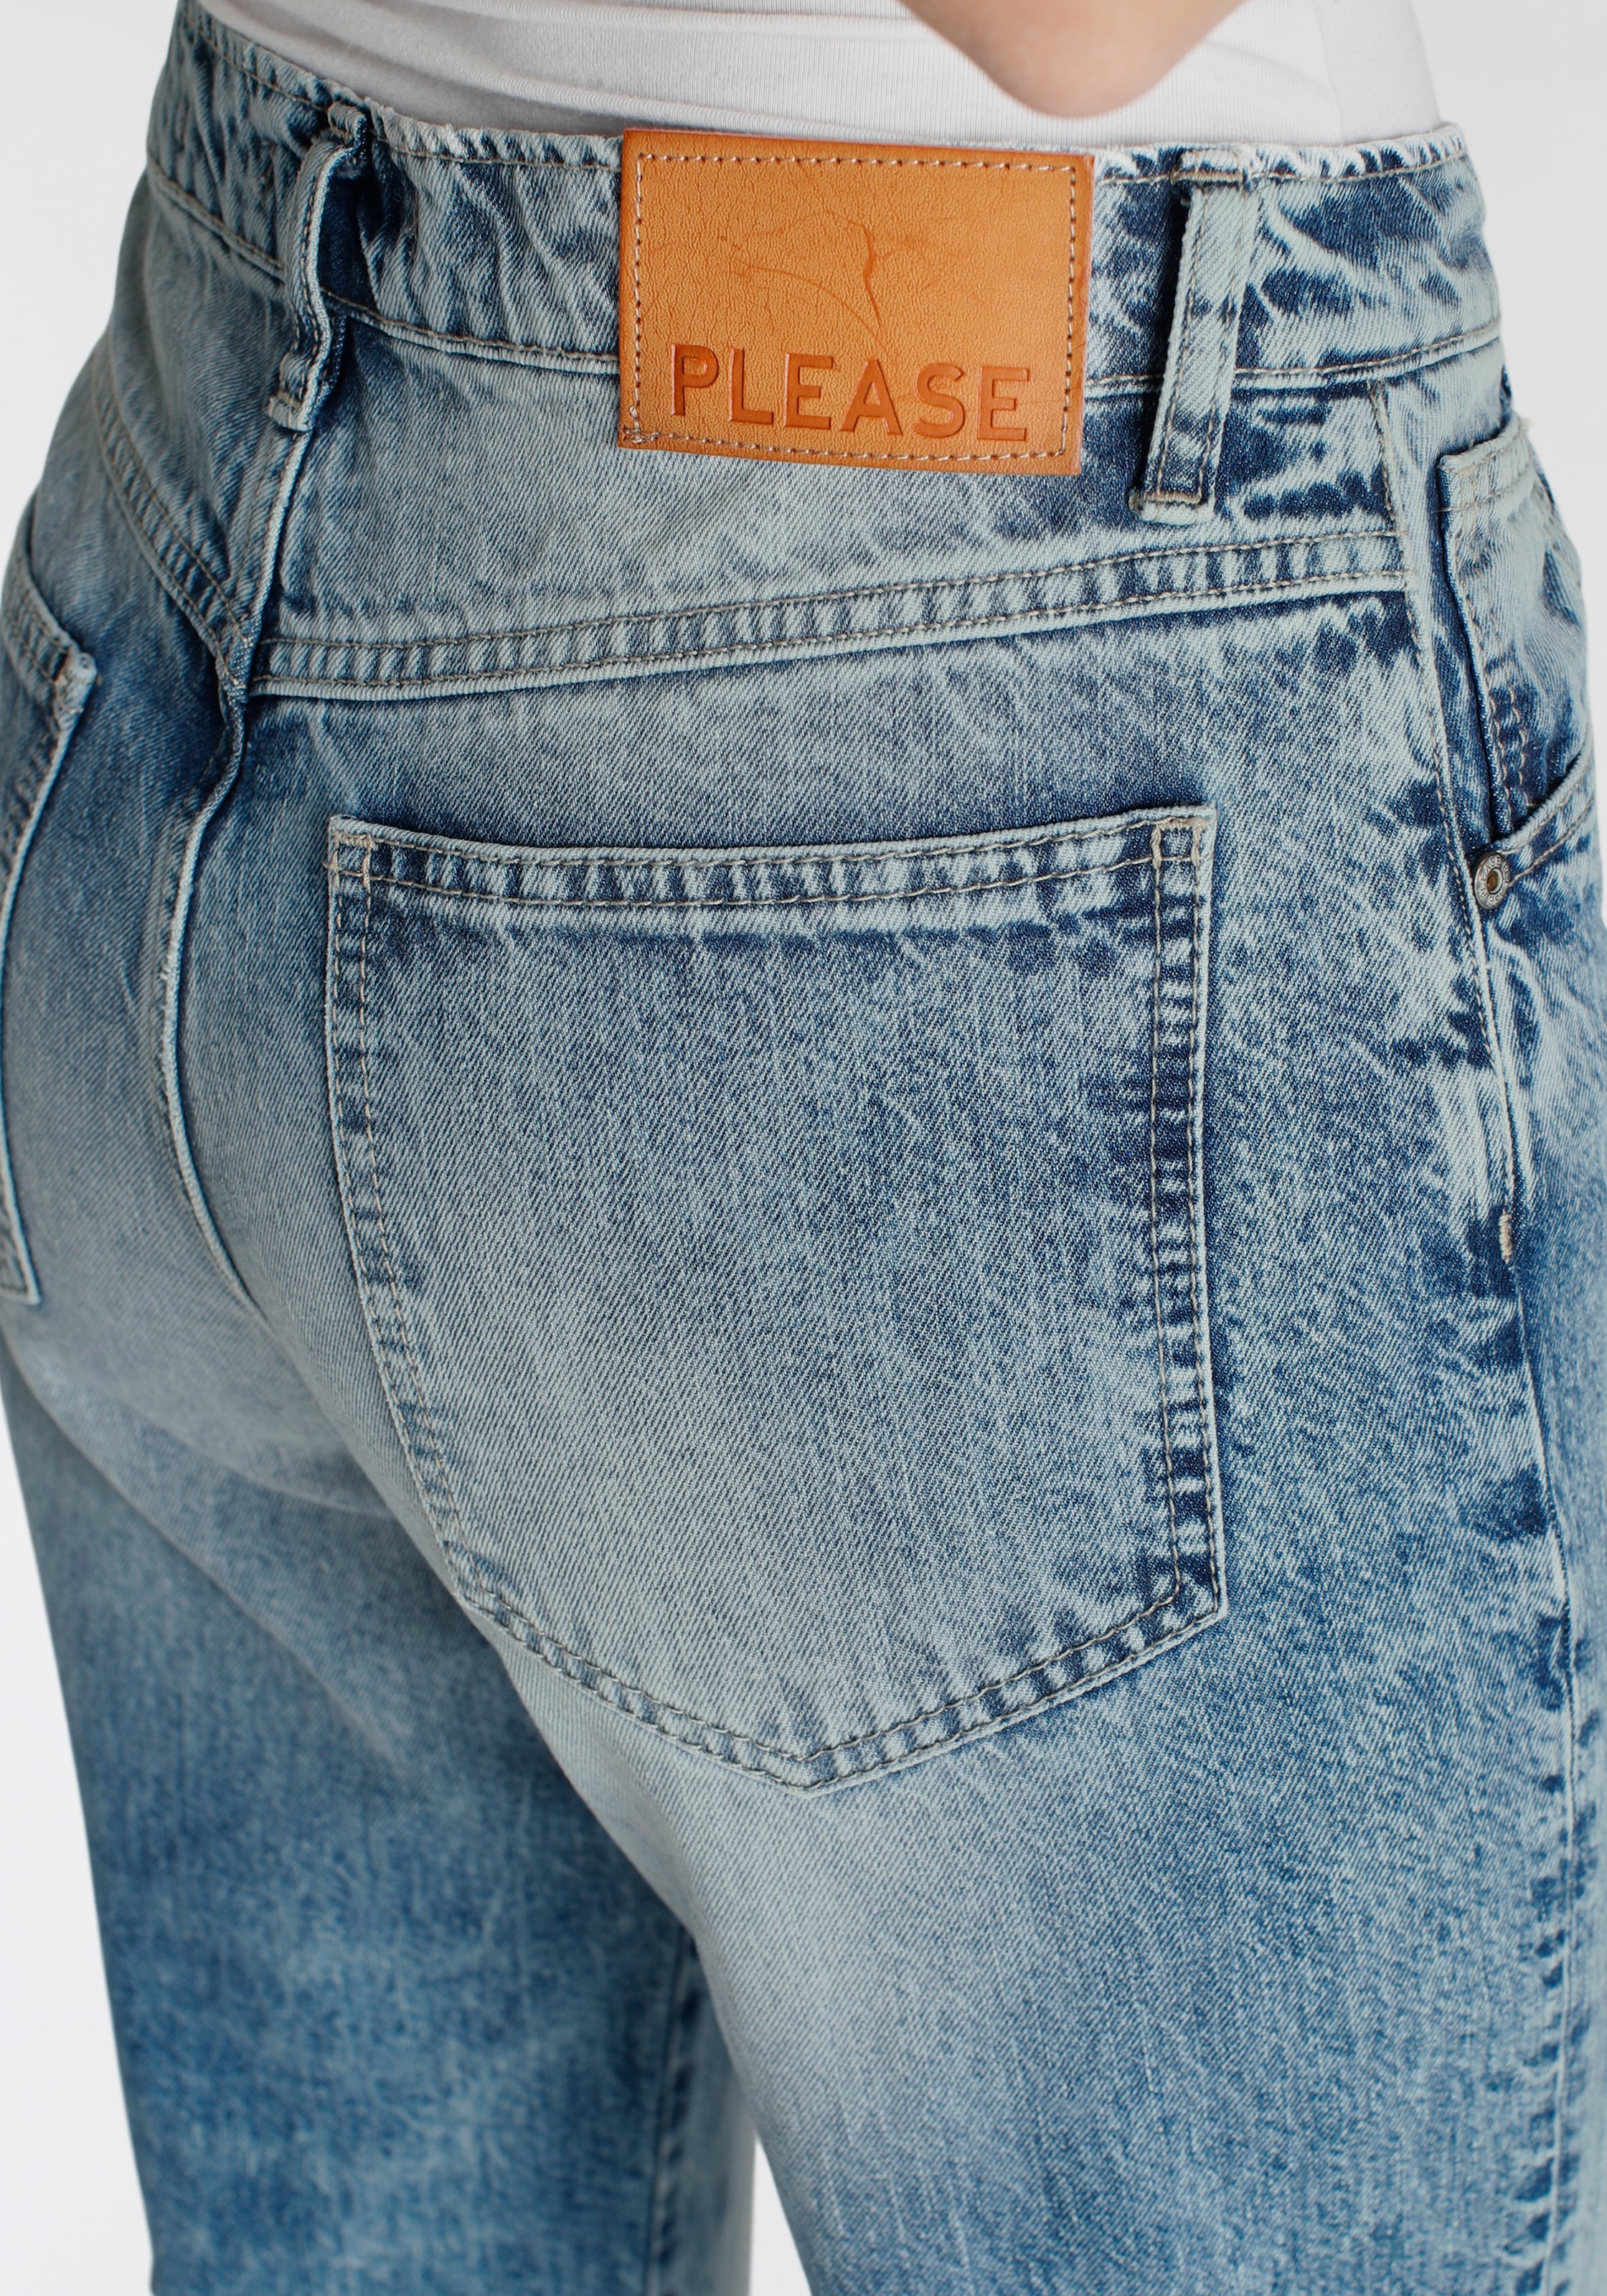 Please Jeans Boyfriend-Hose für BAUR kaufen 